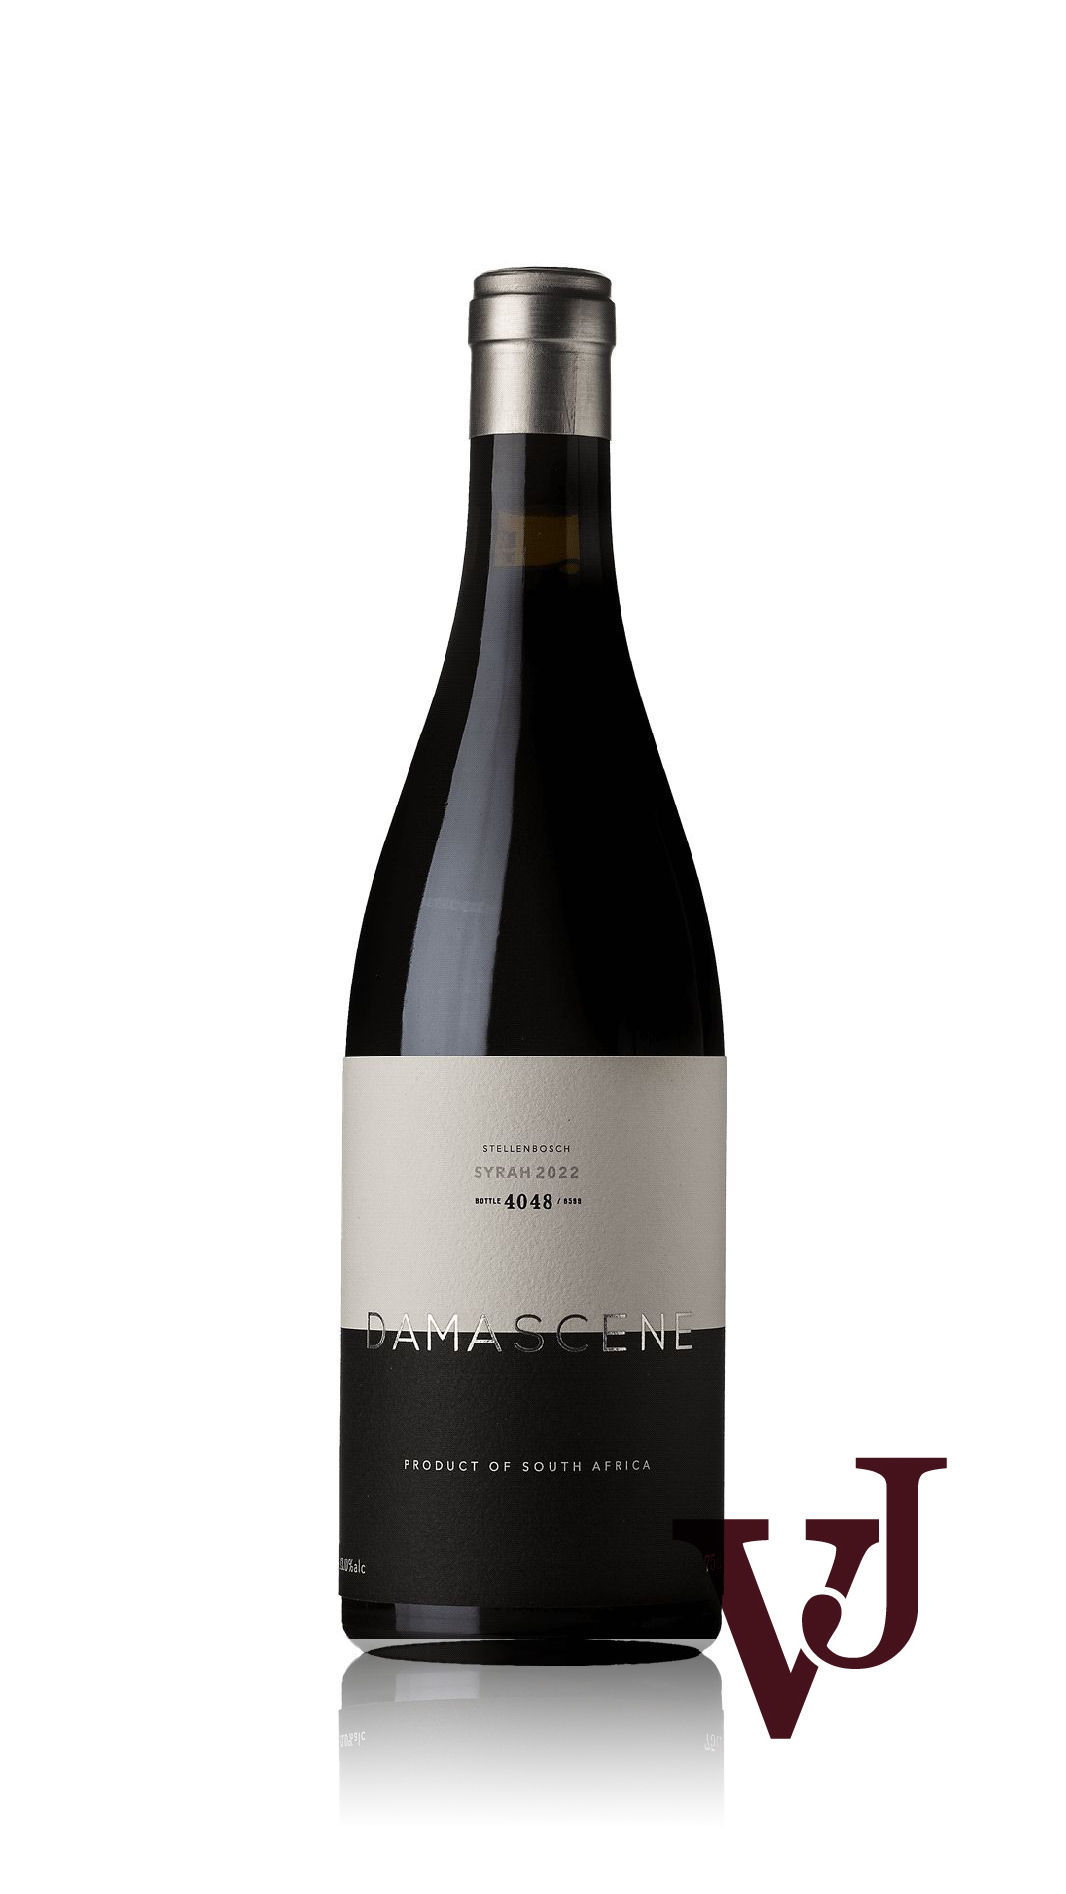 Rött Vin - Damascene Stellenbosch Syrah 2022 artikel nummer 9223801 från producenten Damascene Winery från området Sydafrika.